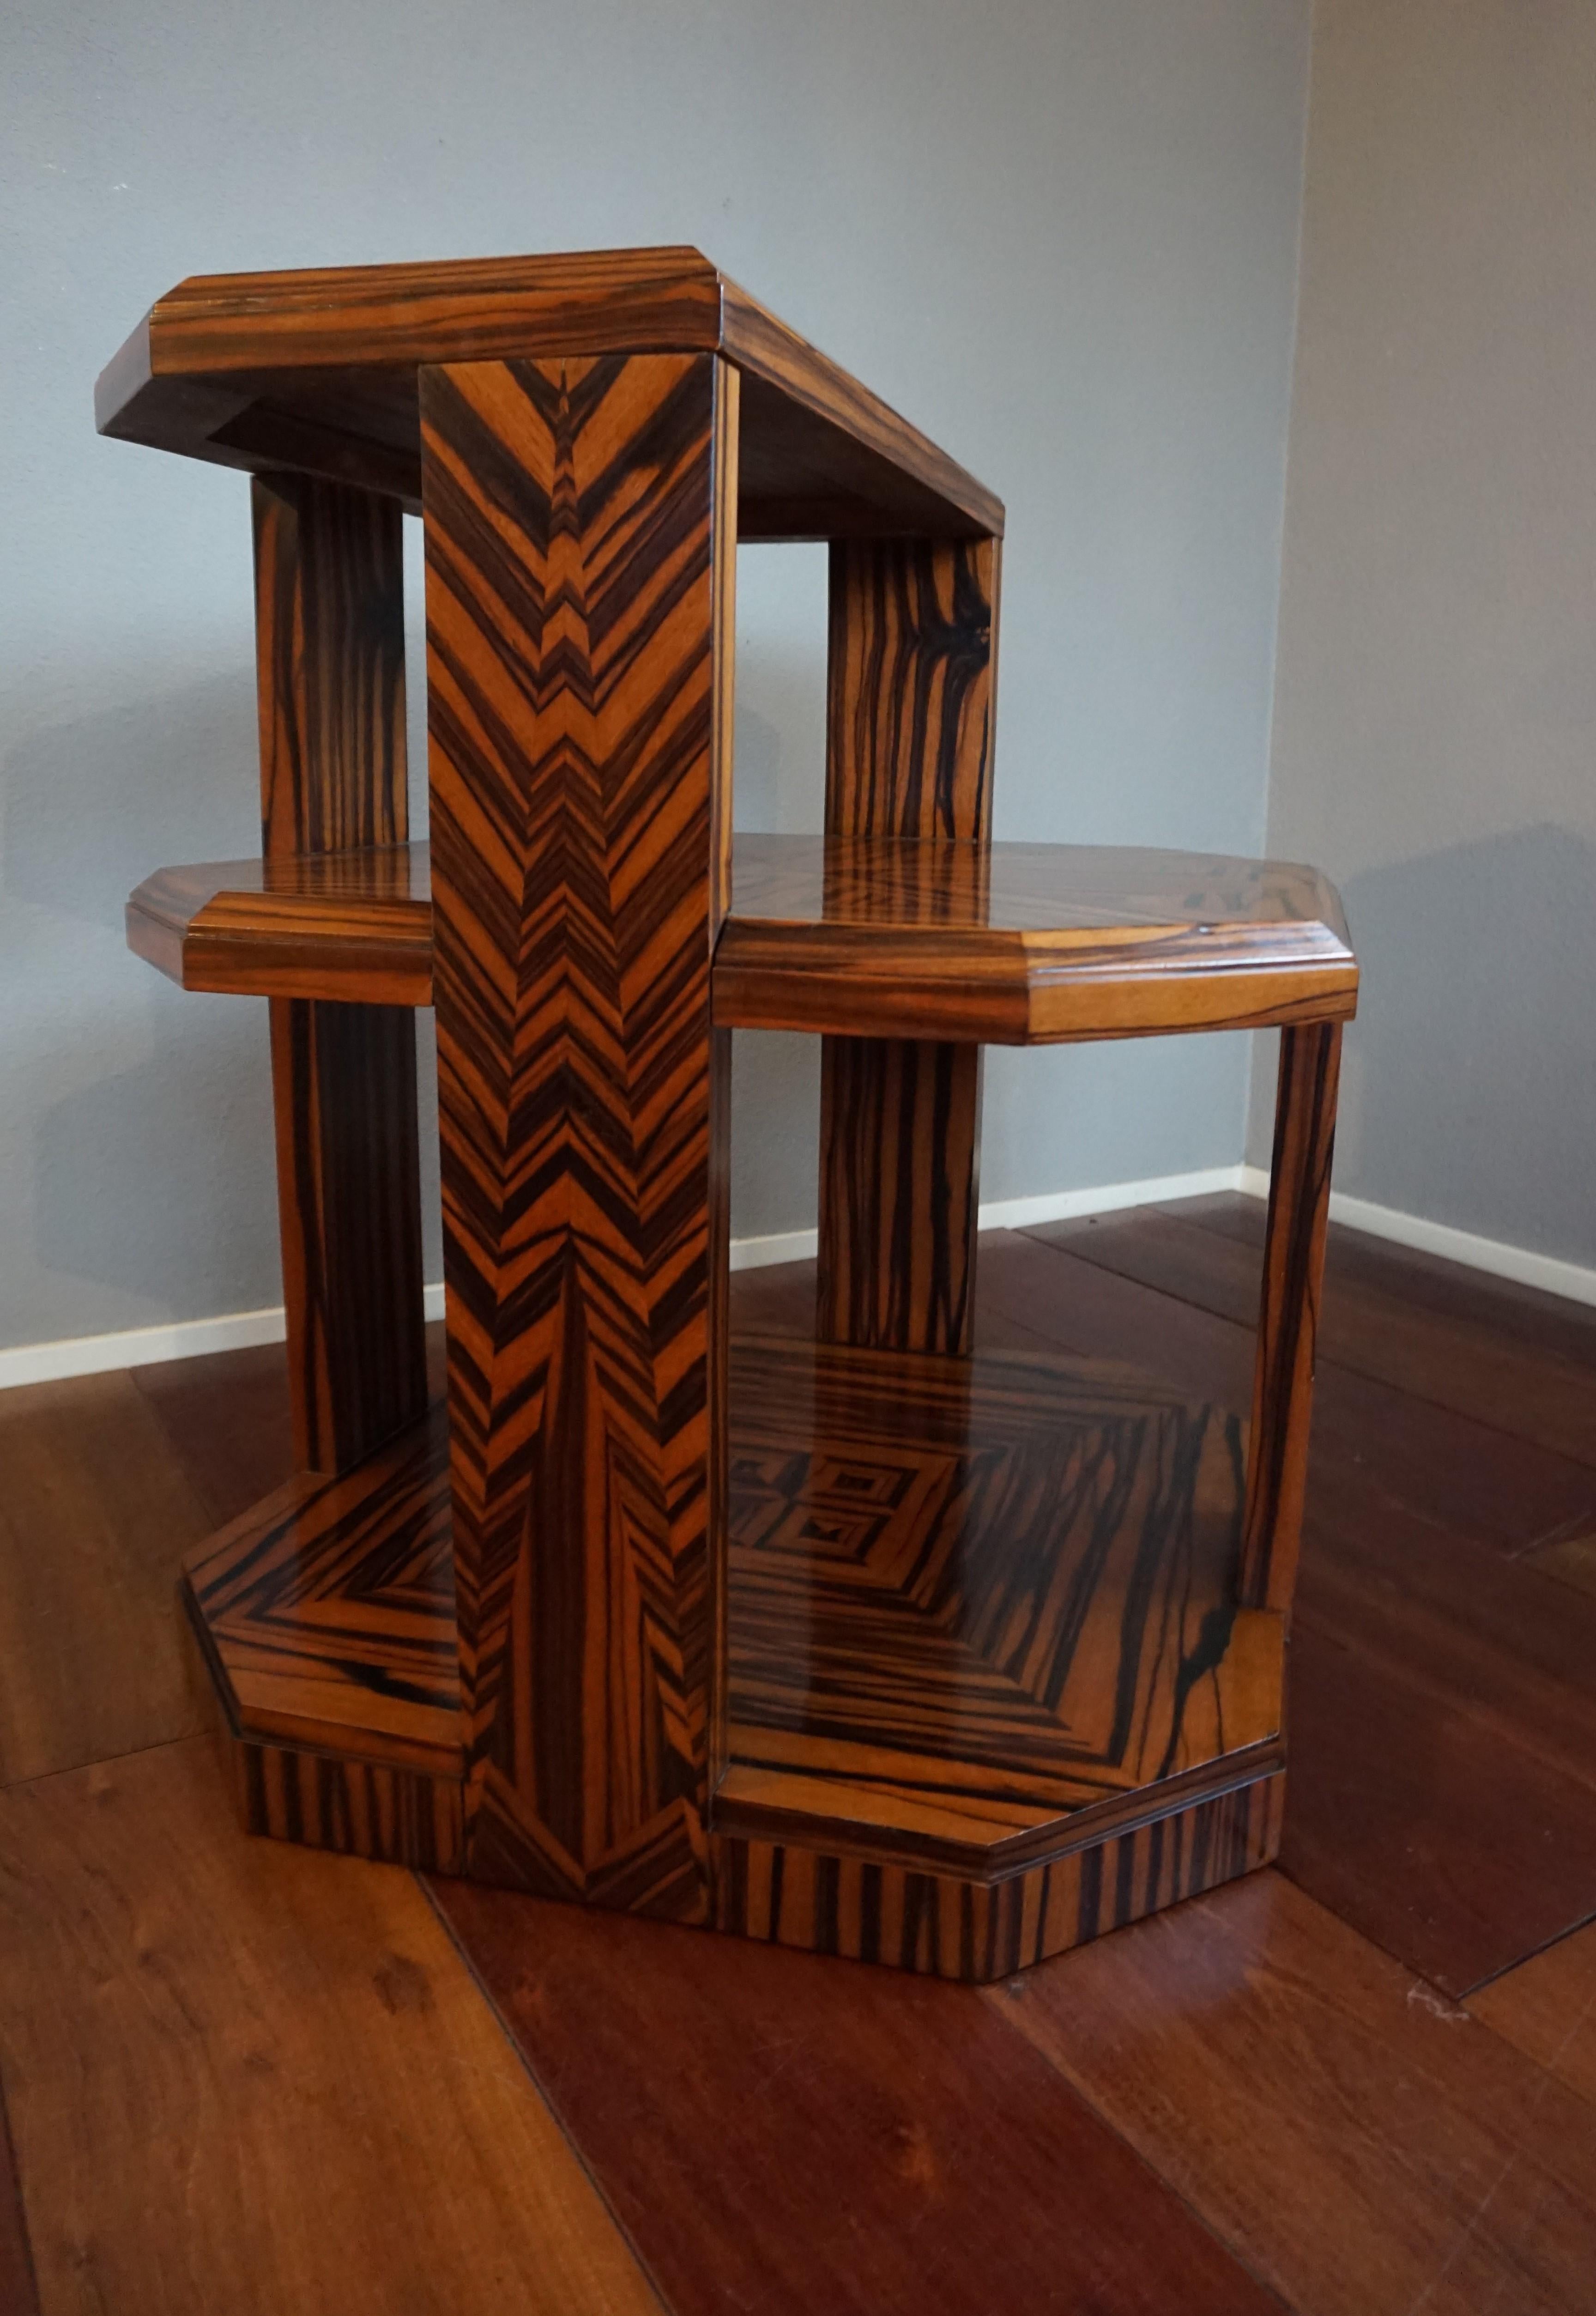 Unique Coromandel Art Deco Étagère Table with Stunning Inlaid Geometric Patterns 8